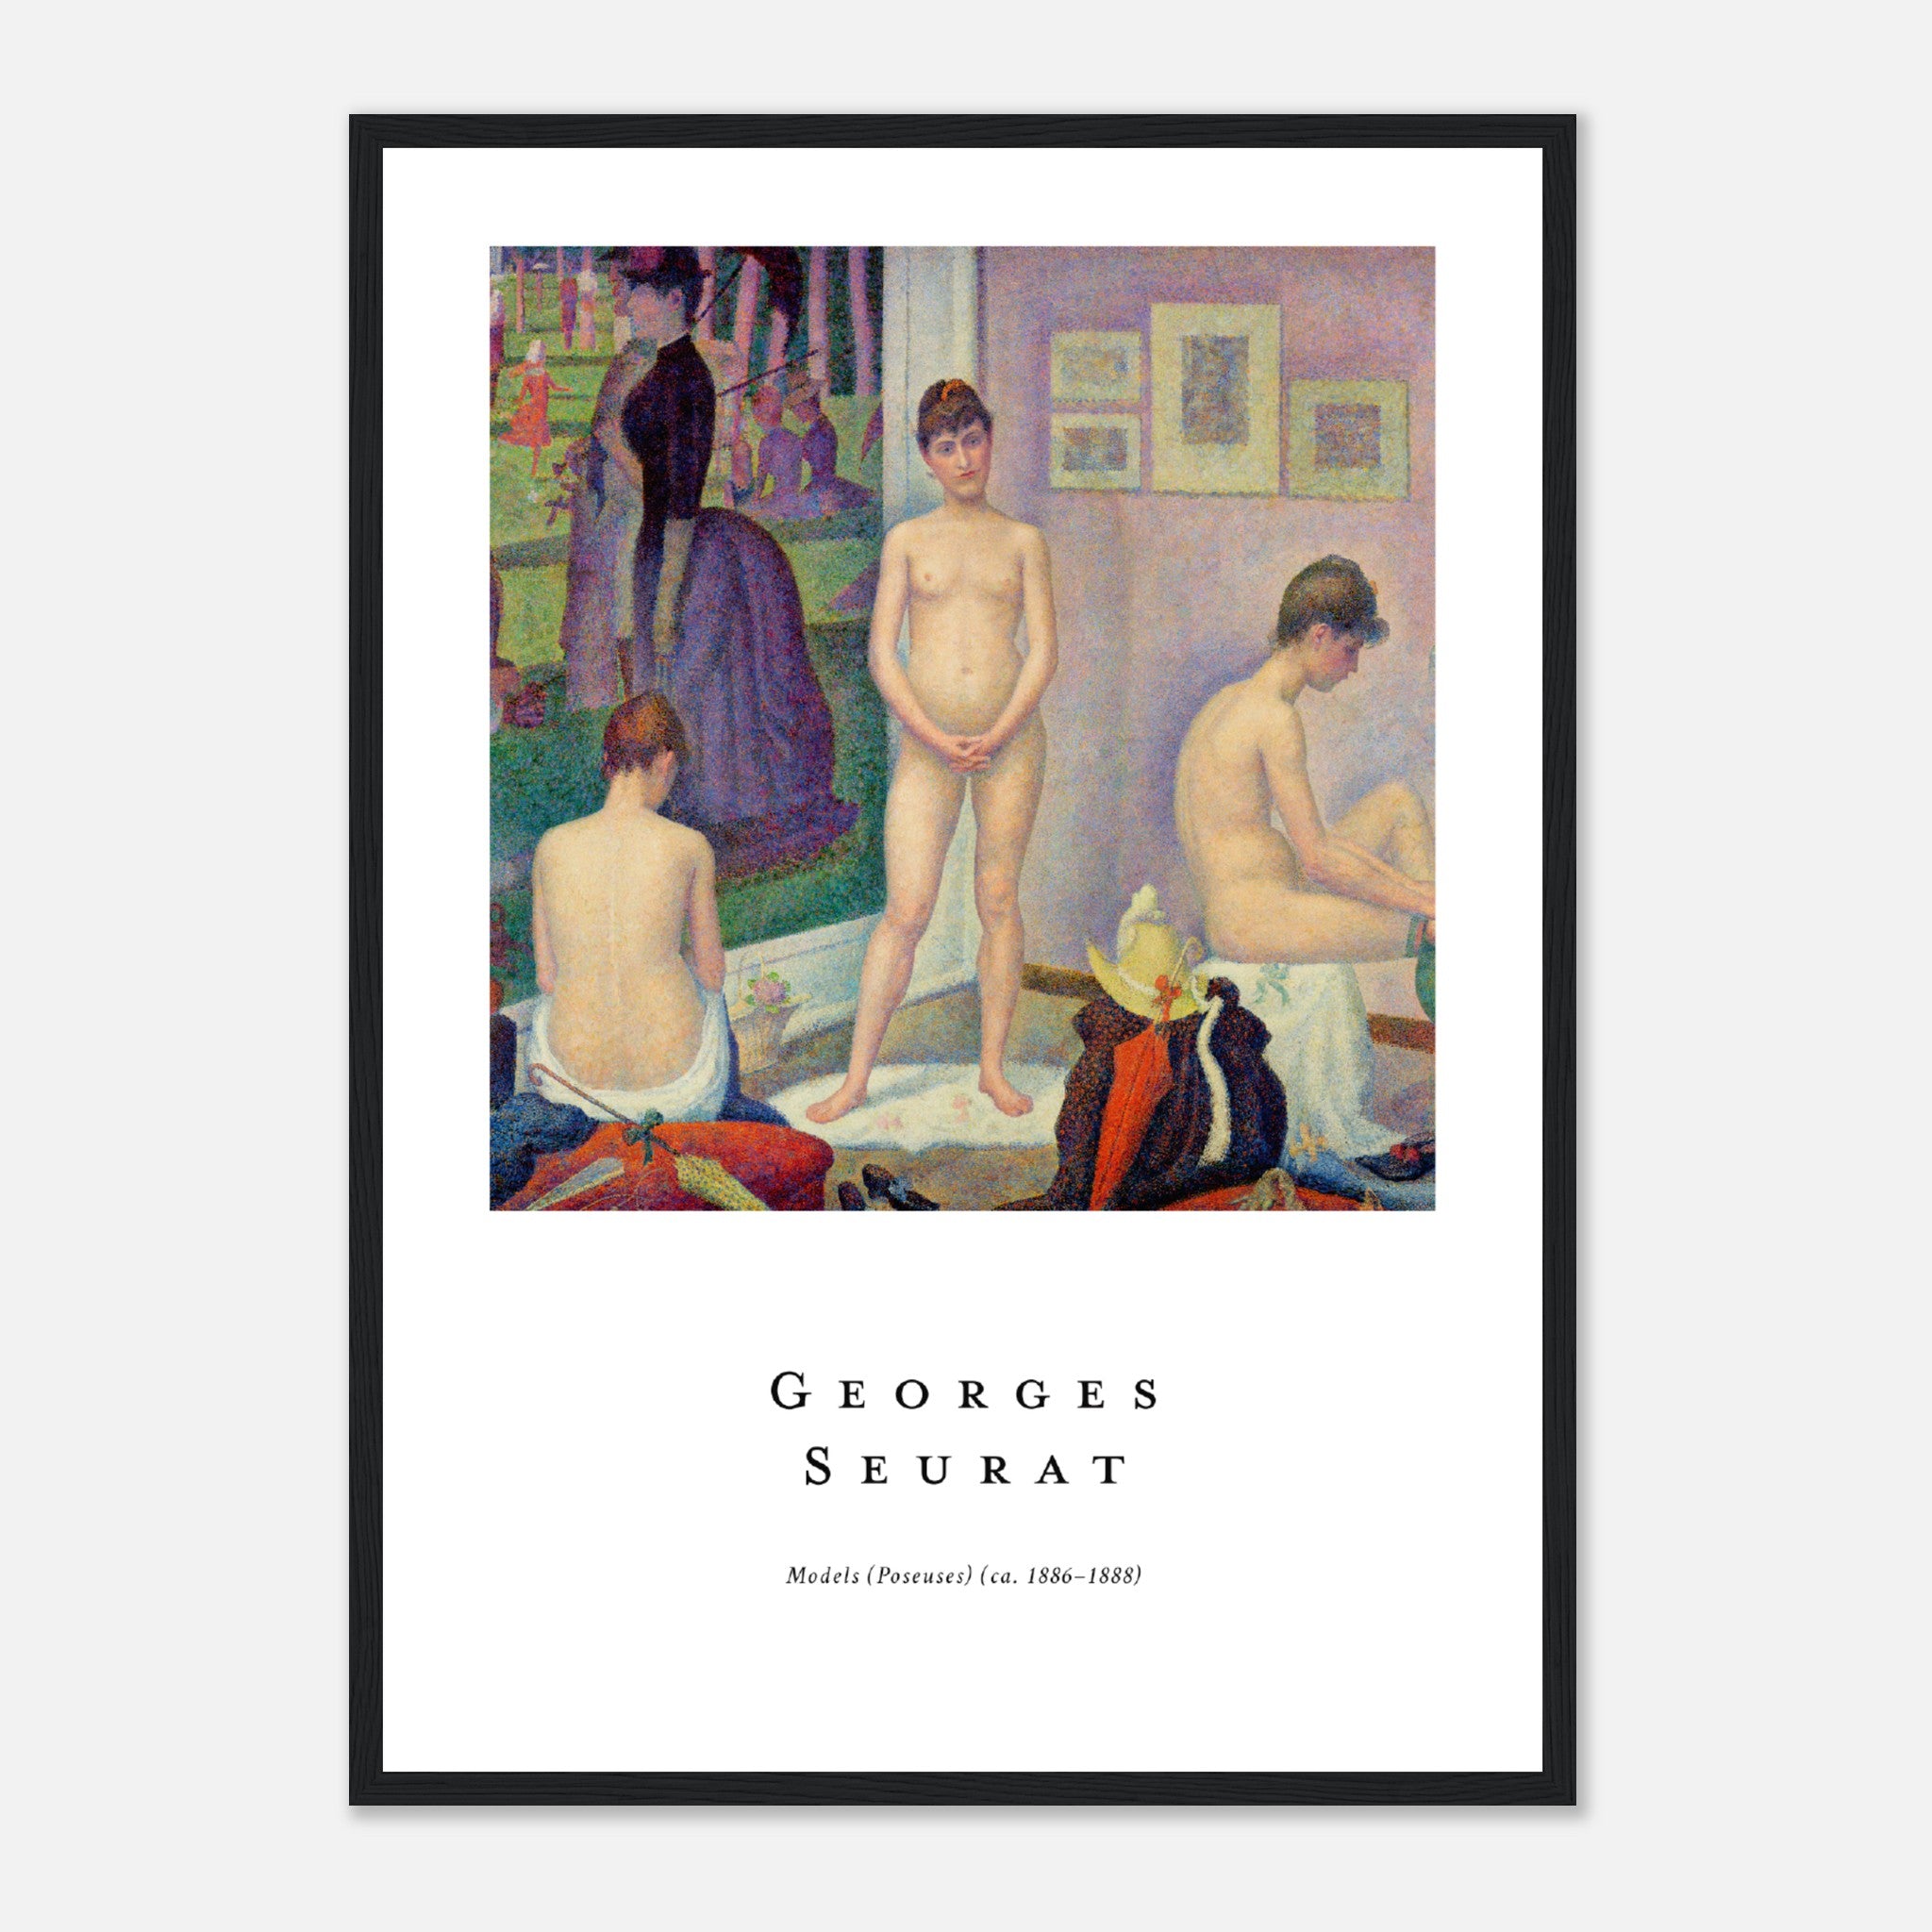 Modelos de Georges Seurat Póster